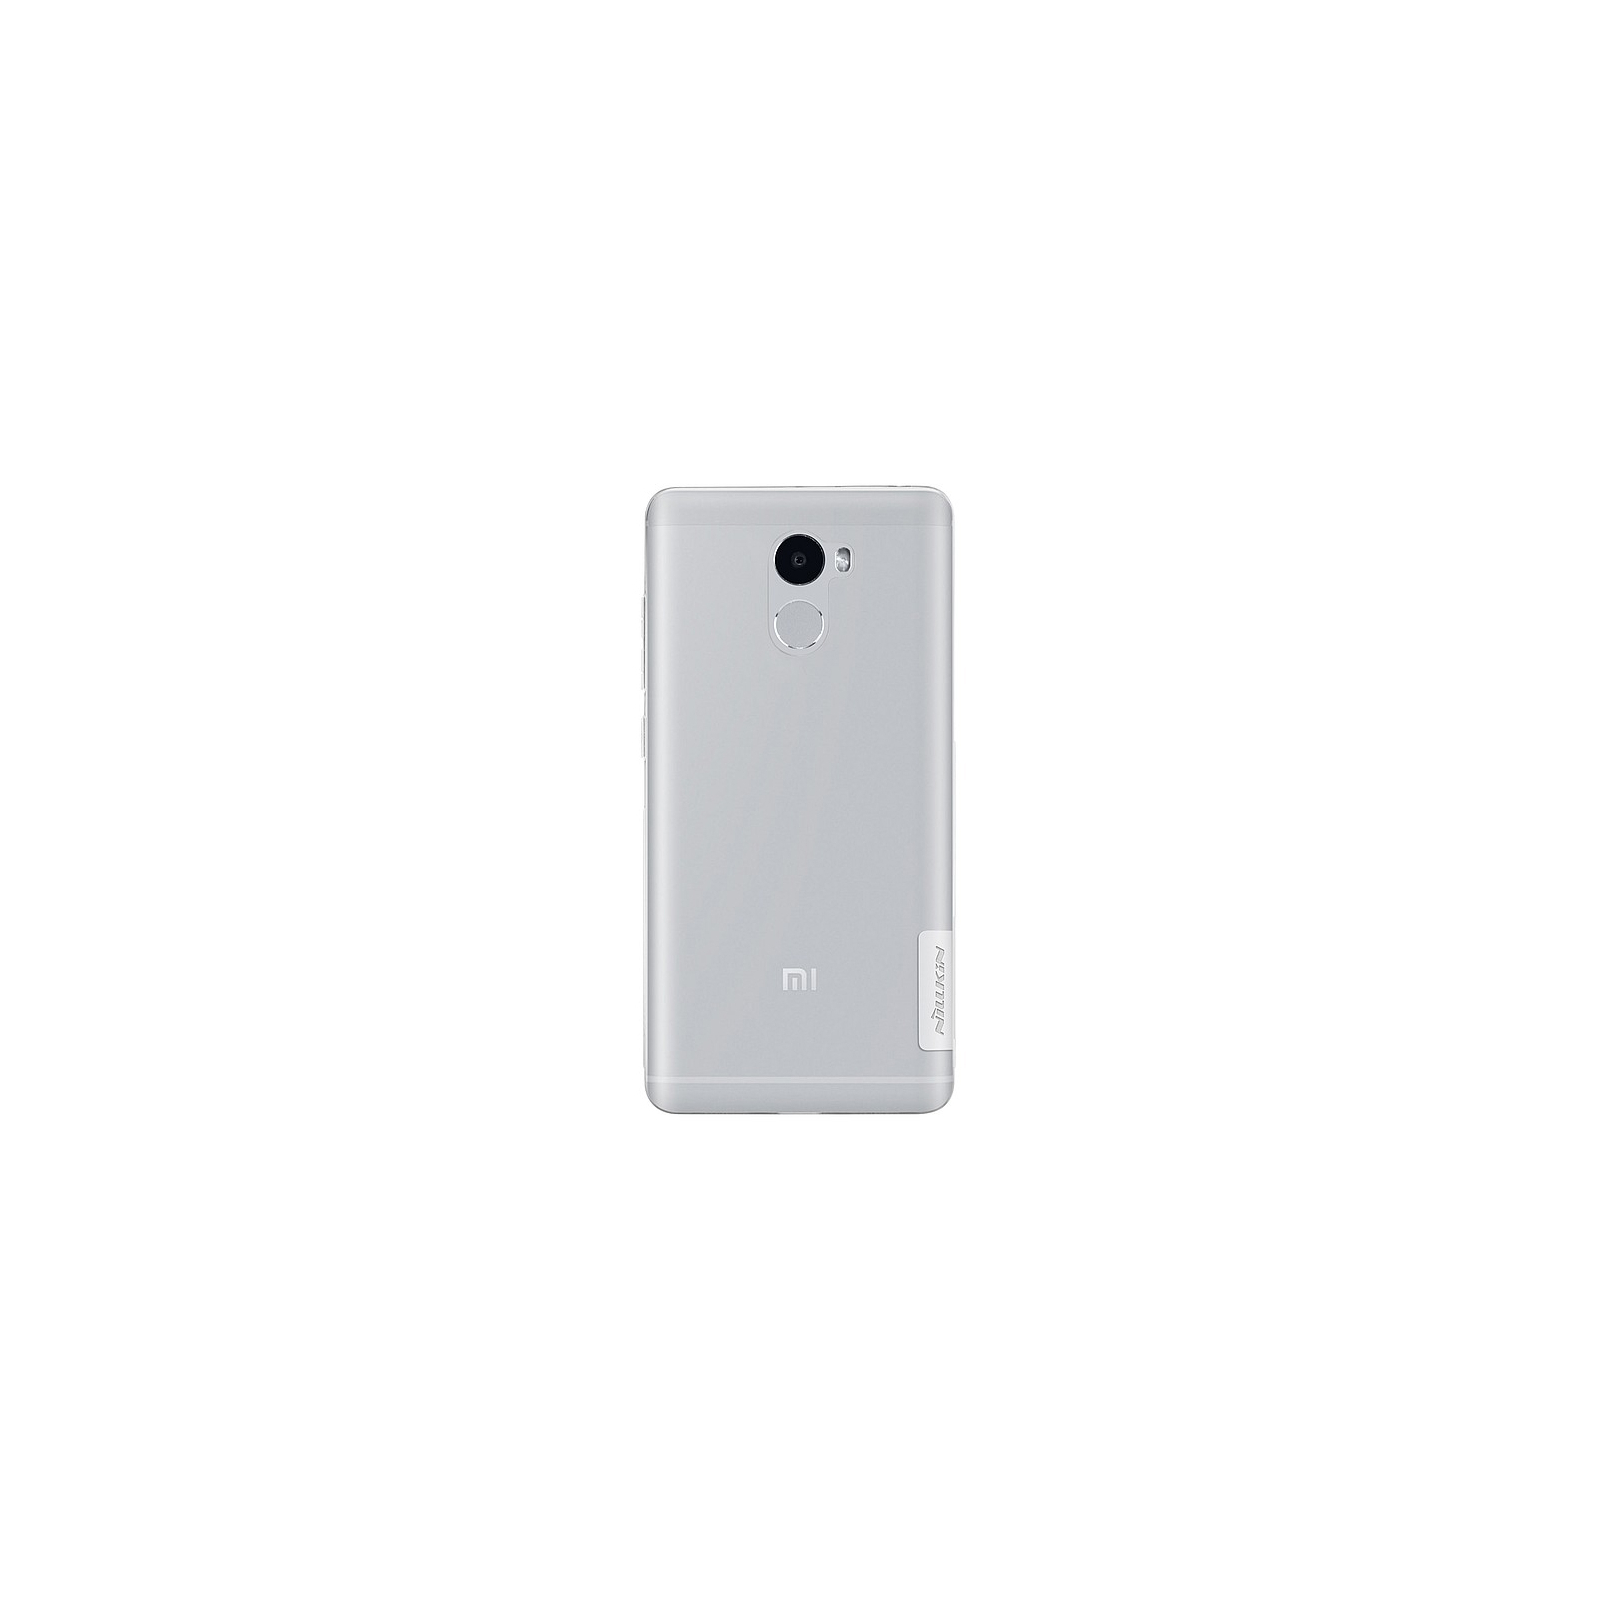 Чехол для мобильного телефона Nillkin для Xiaomi Redmi 4 - Nature TPU (White) (6318306) изображение 2